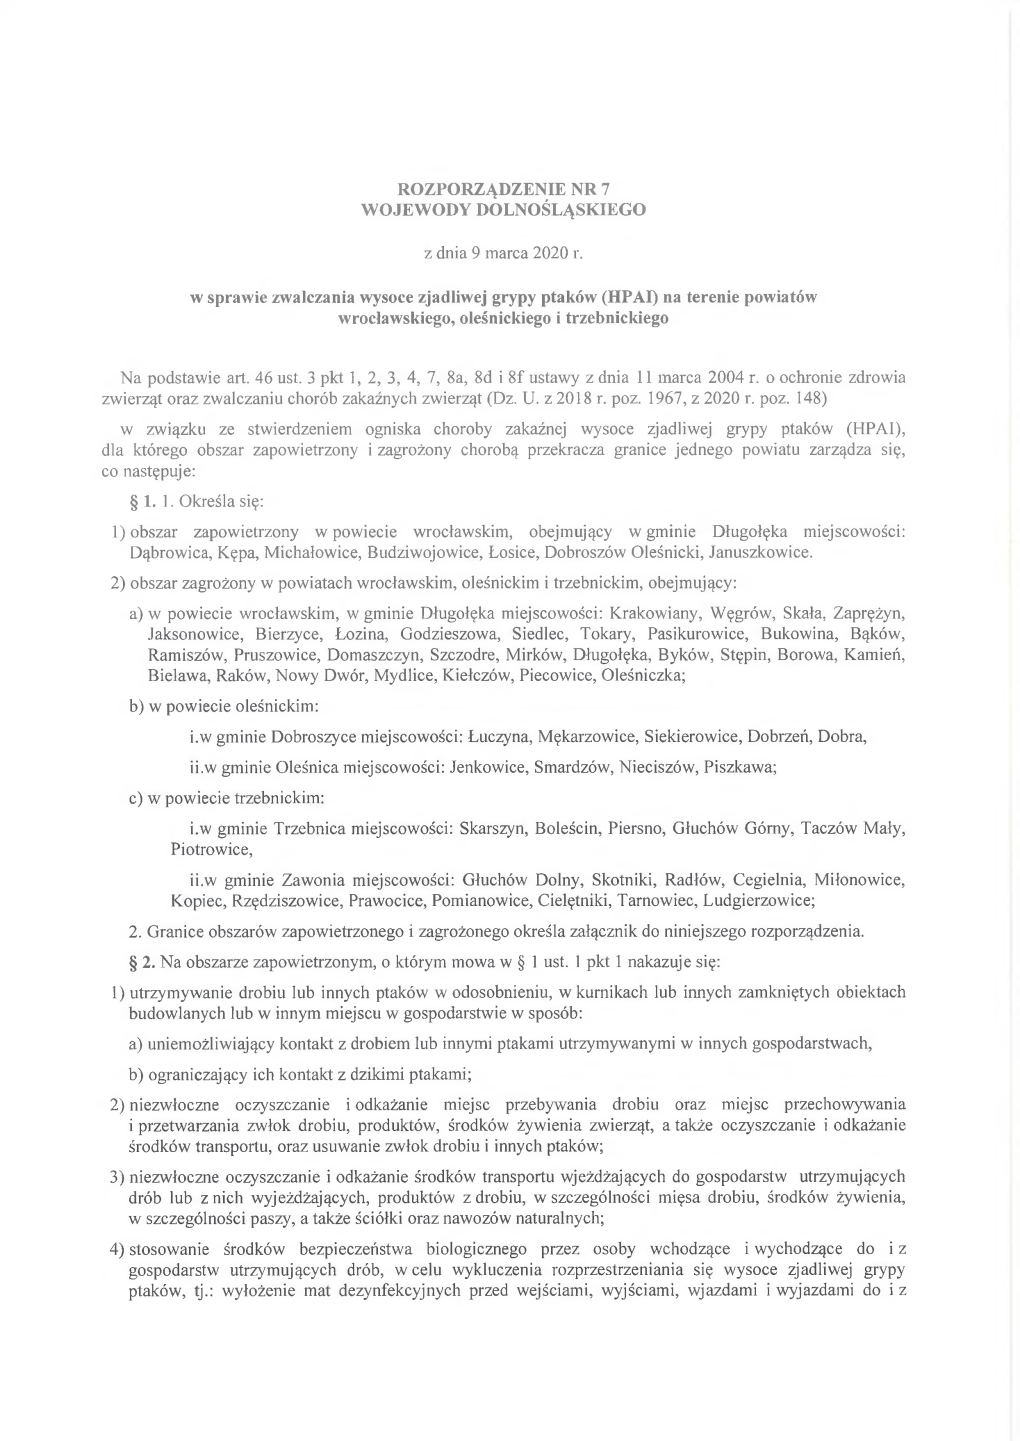 Rozporządzenie Nr 7 Wojewody Dolnośląskiego Z Dnia 9 Marca 2020 R. W Sprawie Zwalczania Wysoce Zjadliwej